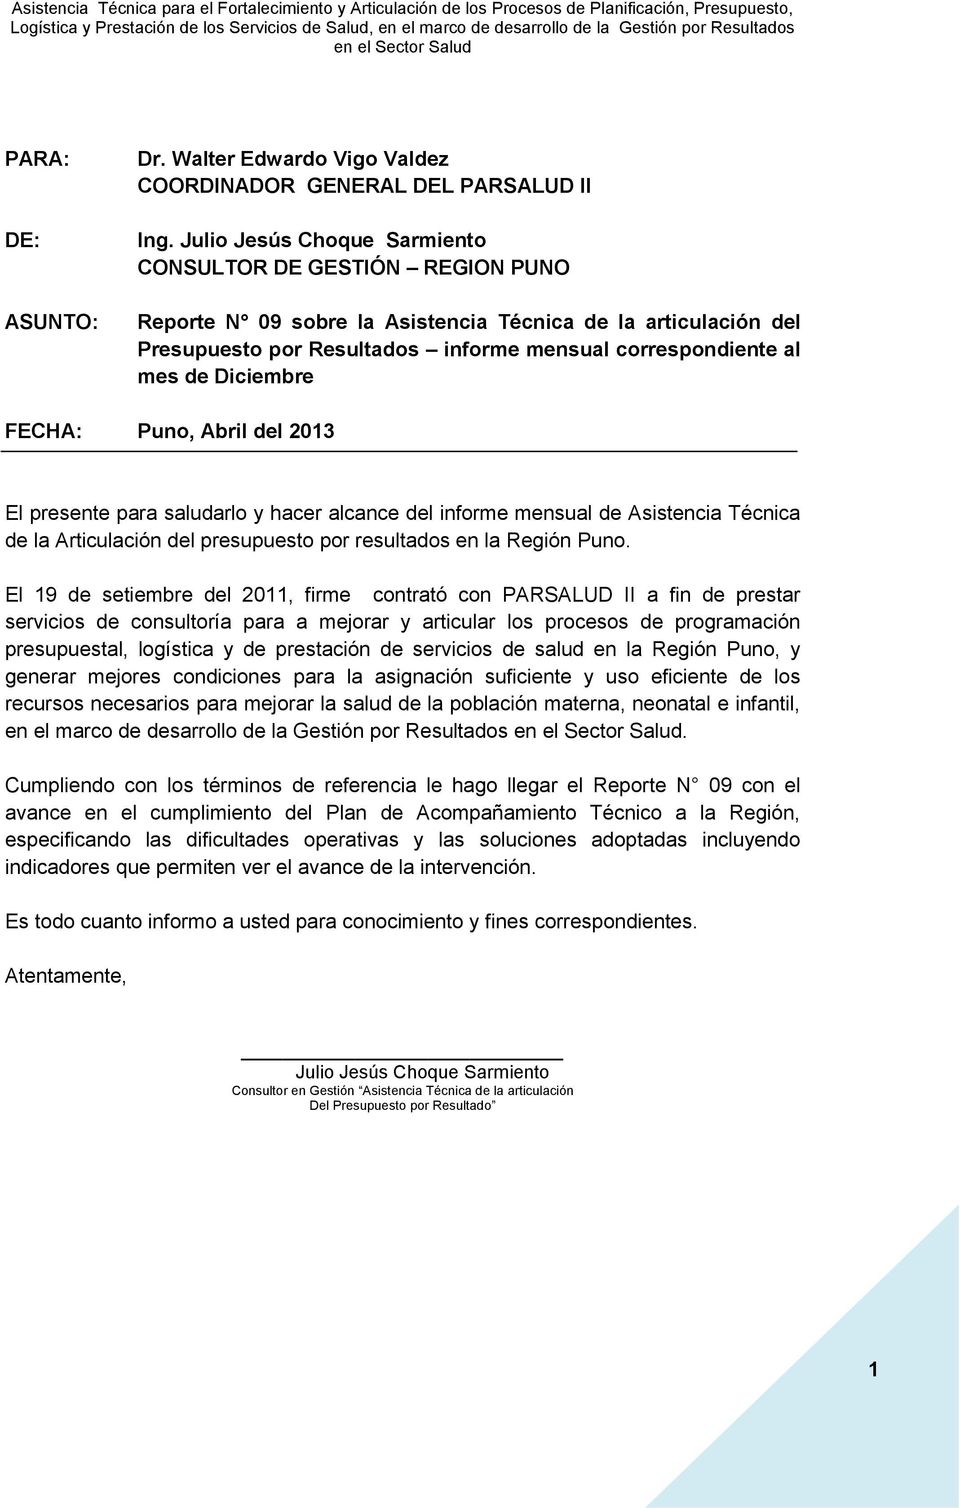 Diciembre FECHA: Puno, Abril del 2013 El presente para saludarlo y hacer alcance del informe mensual de Asistencia Técnica de la Articulación del presupuesto por resultados en la Región Puno.